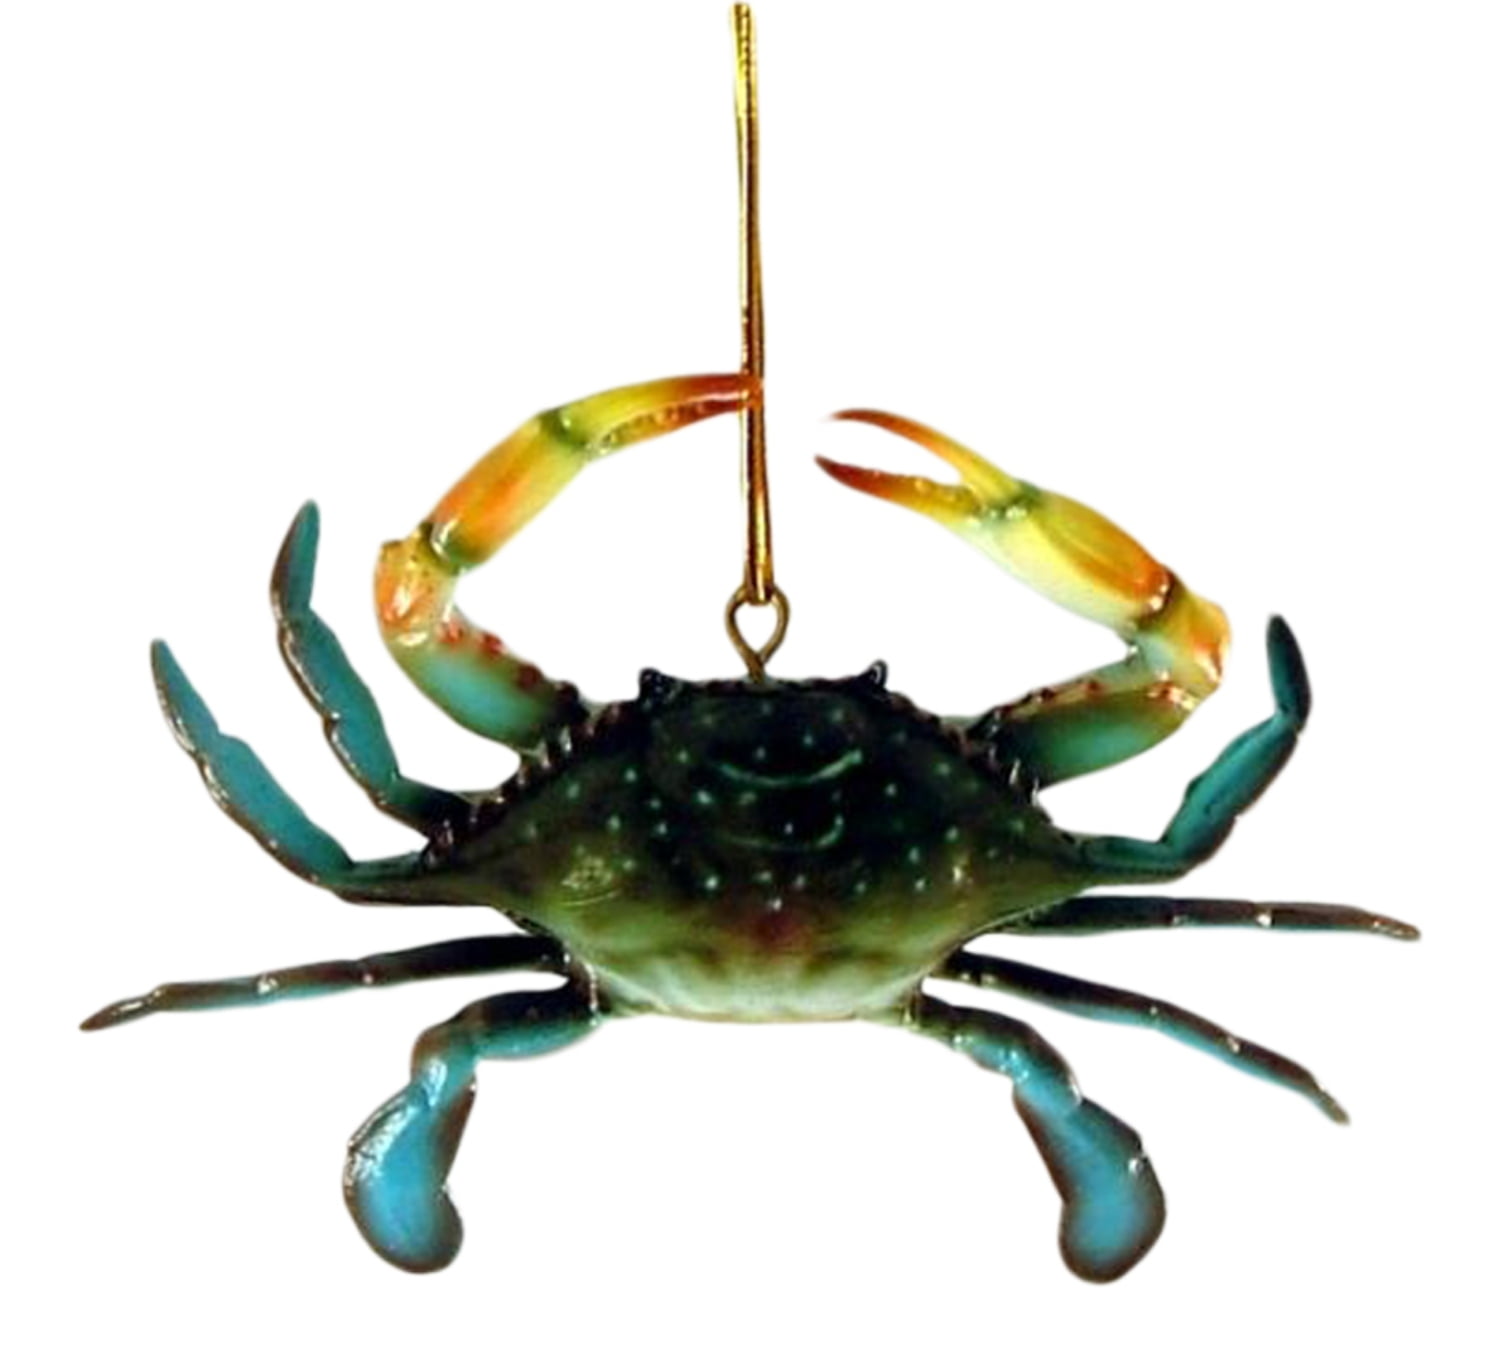 12 Realistic Three-Dimensional Blue Crabs 3 3/4 inch 12 pcs Crab Shack Decor 